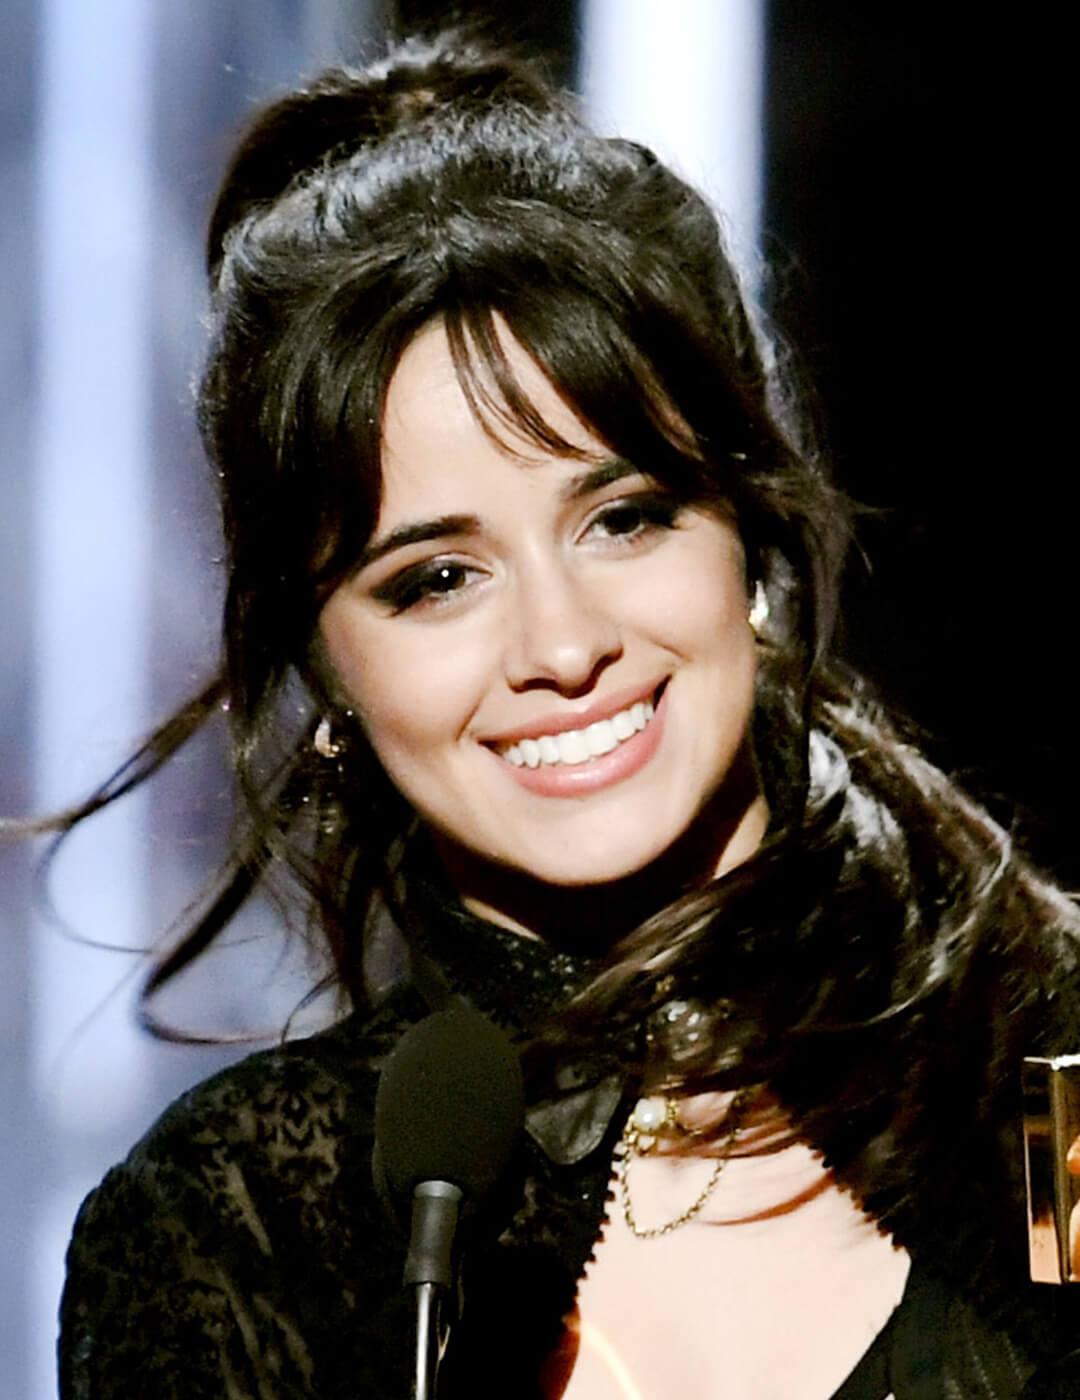 Camila Cabello smiling in an all-black ensemble and dark smoky eye makeup look